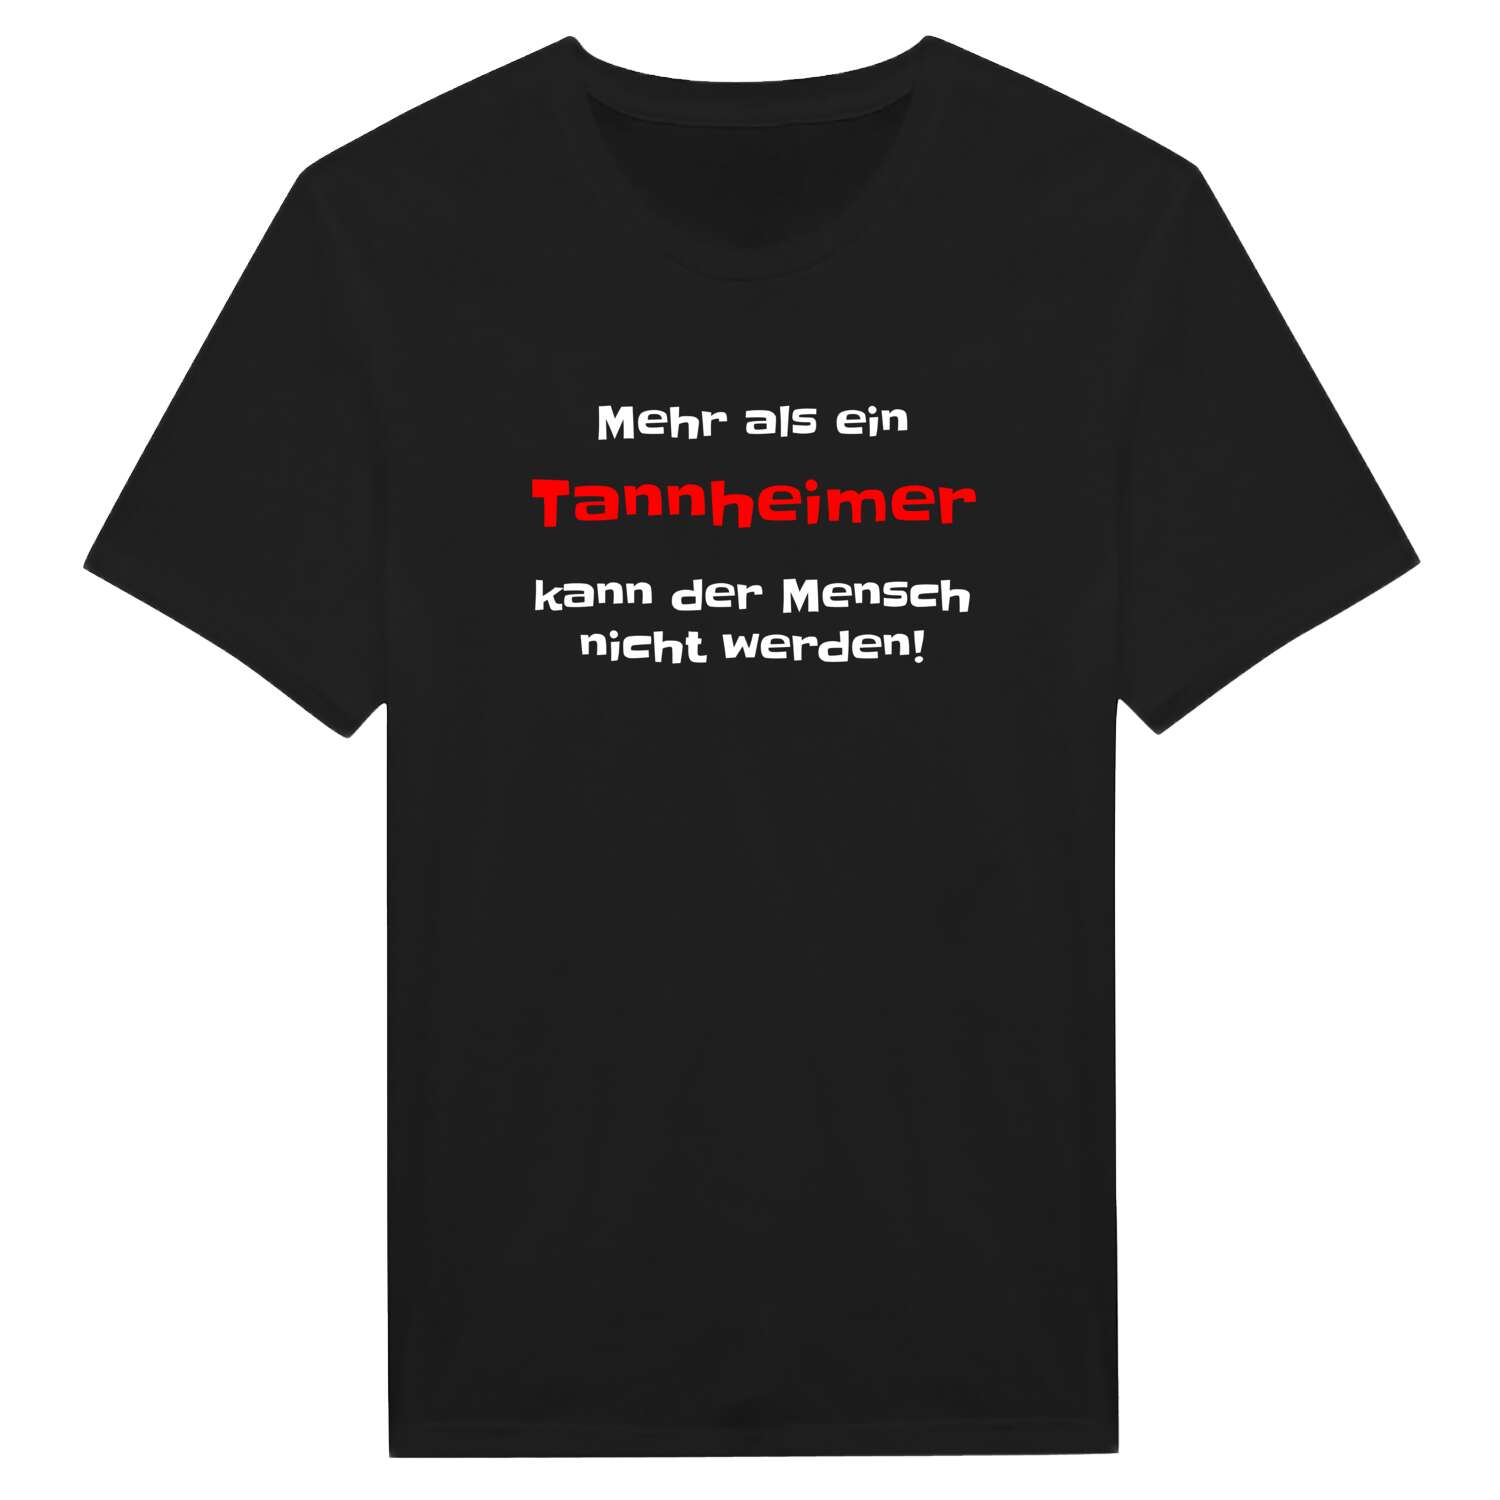 Tannheim T-Shirt »Mehr als ein«